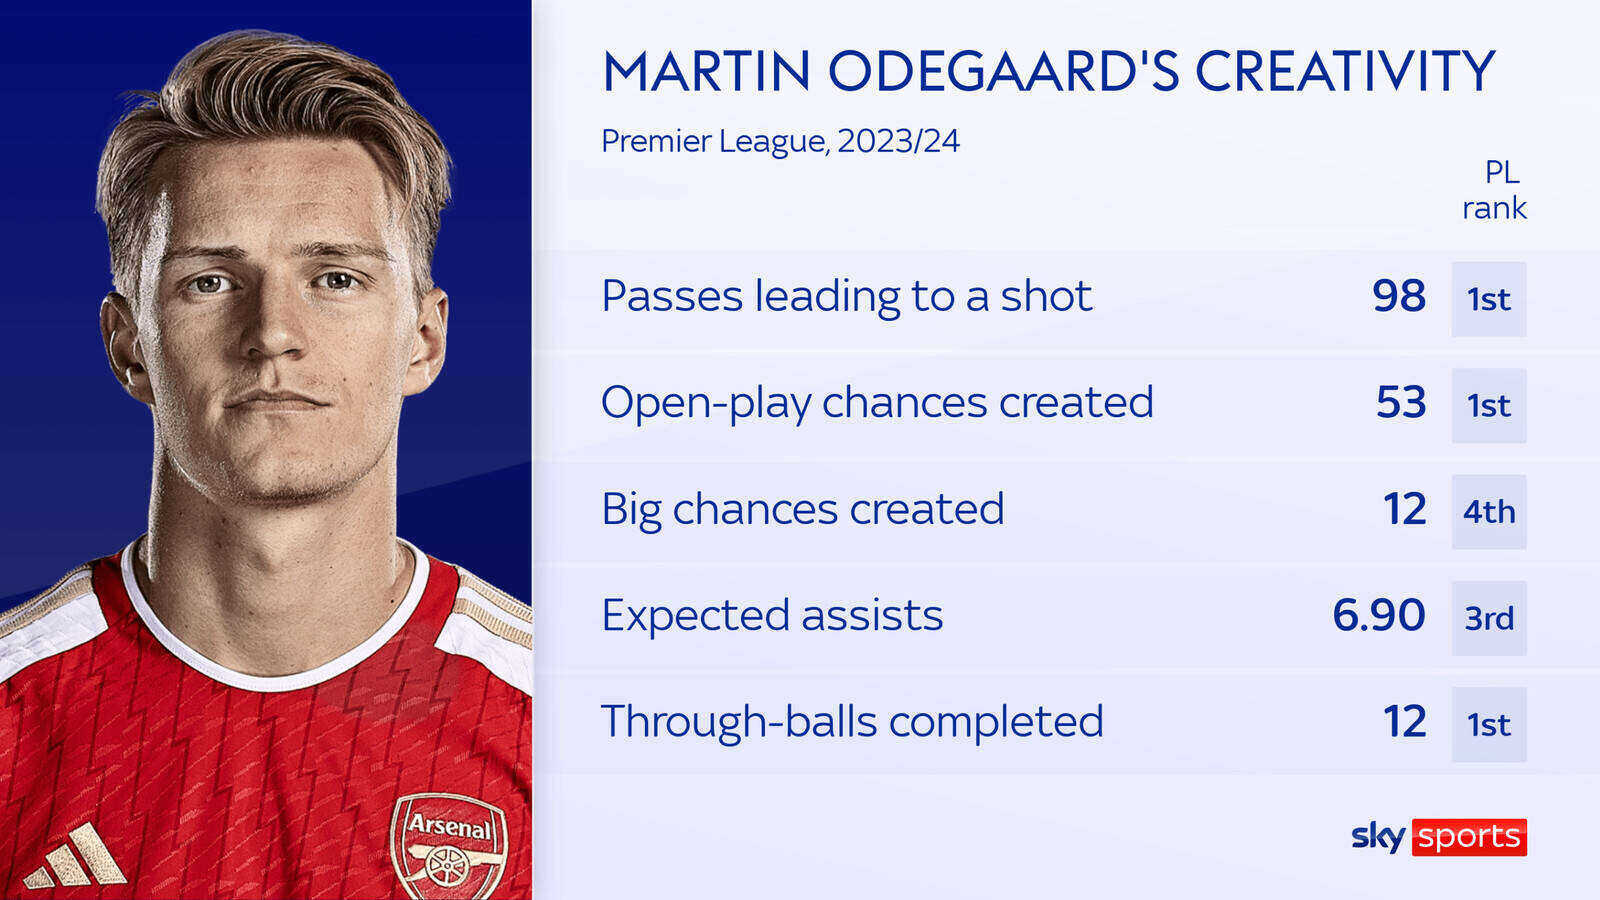 Odegaard vẫn đang nằm trong top đầu về các thông số liên quan đến chuyền bóng tại Premier League mùa này.  Ảnh: Sky Sports